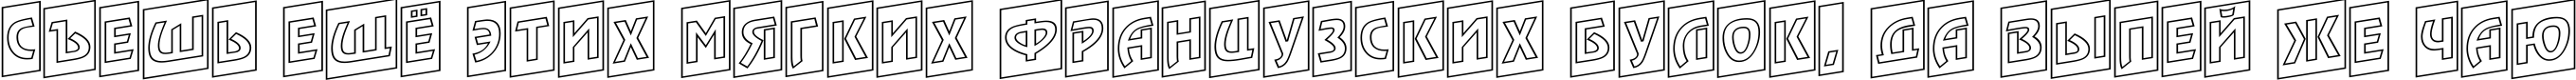 Пример написания шрифтом a_RewinderTitulCmOtlUp текста на русском